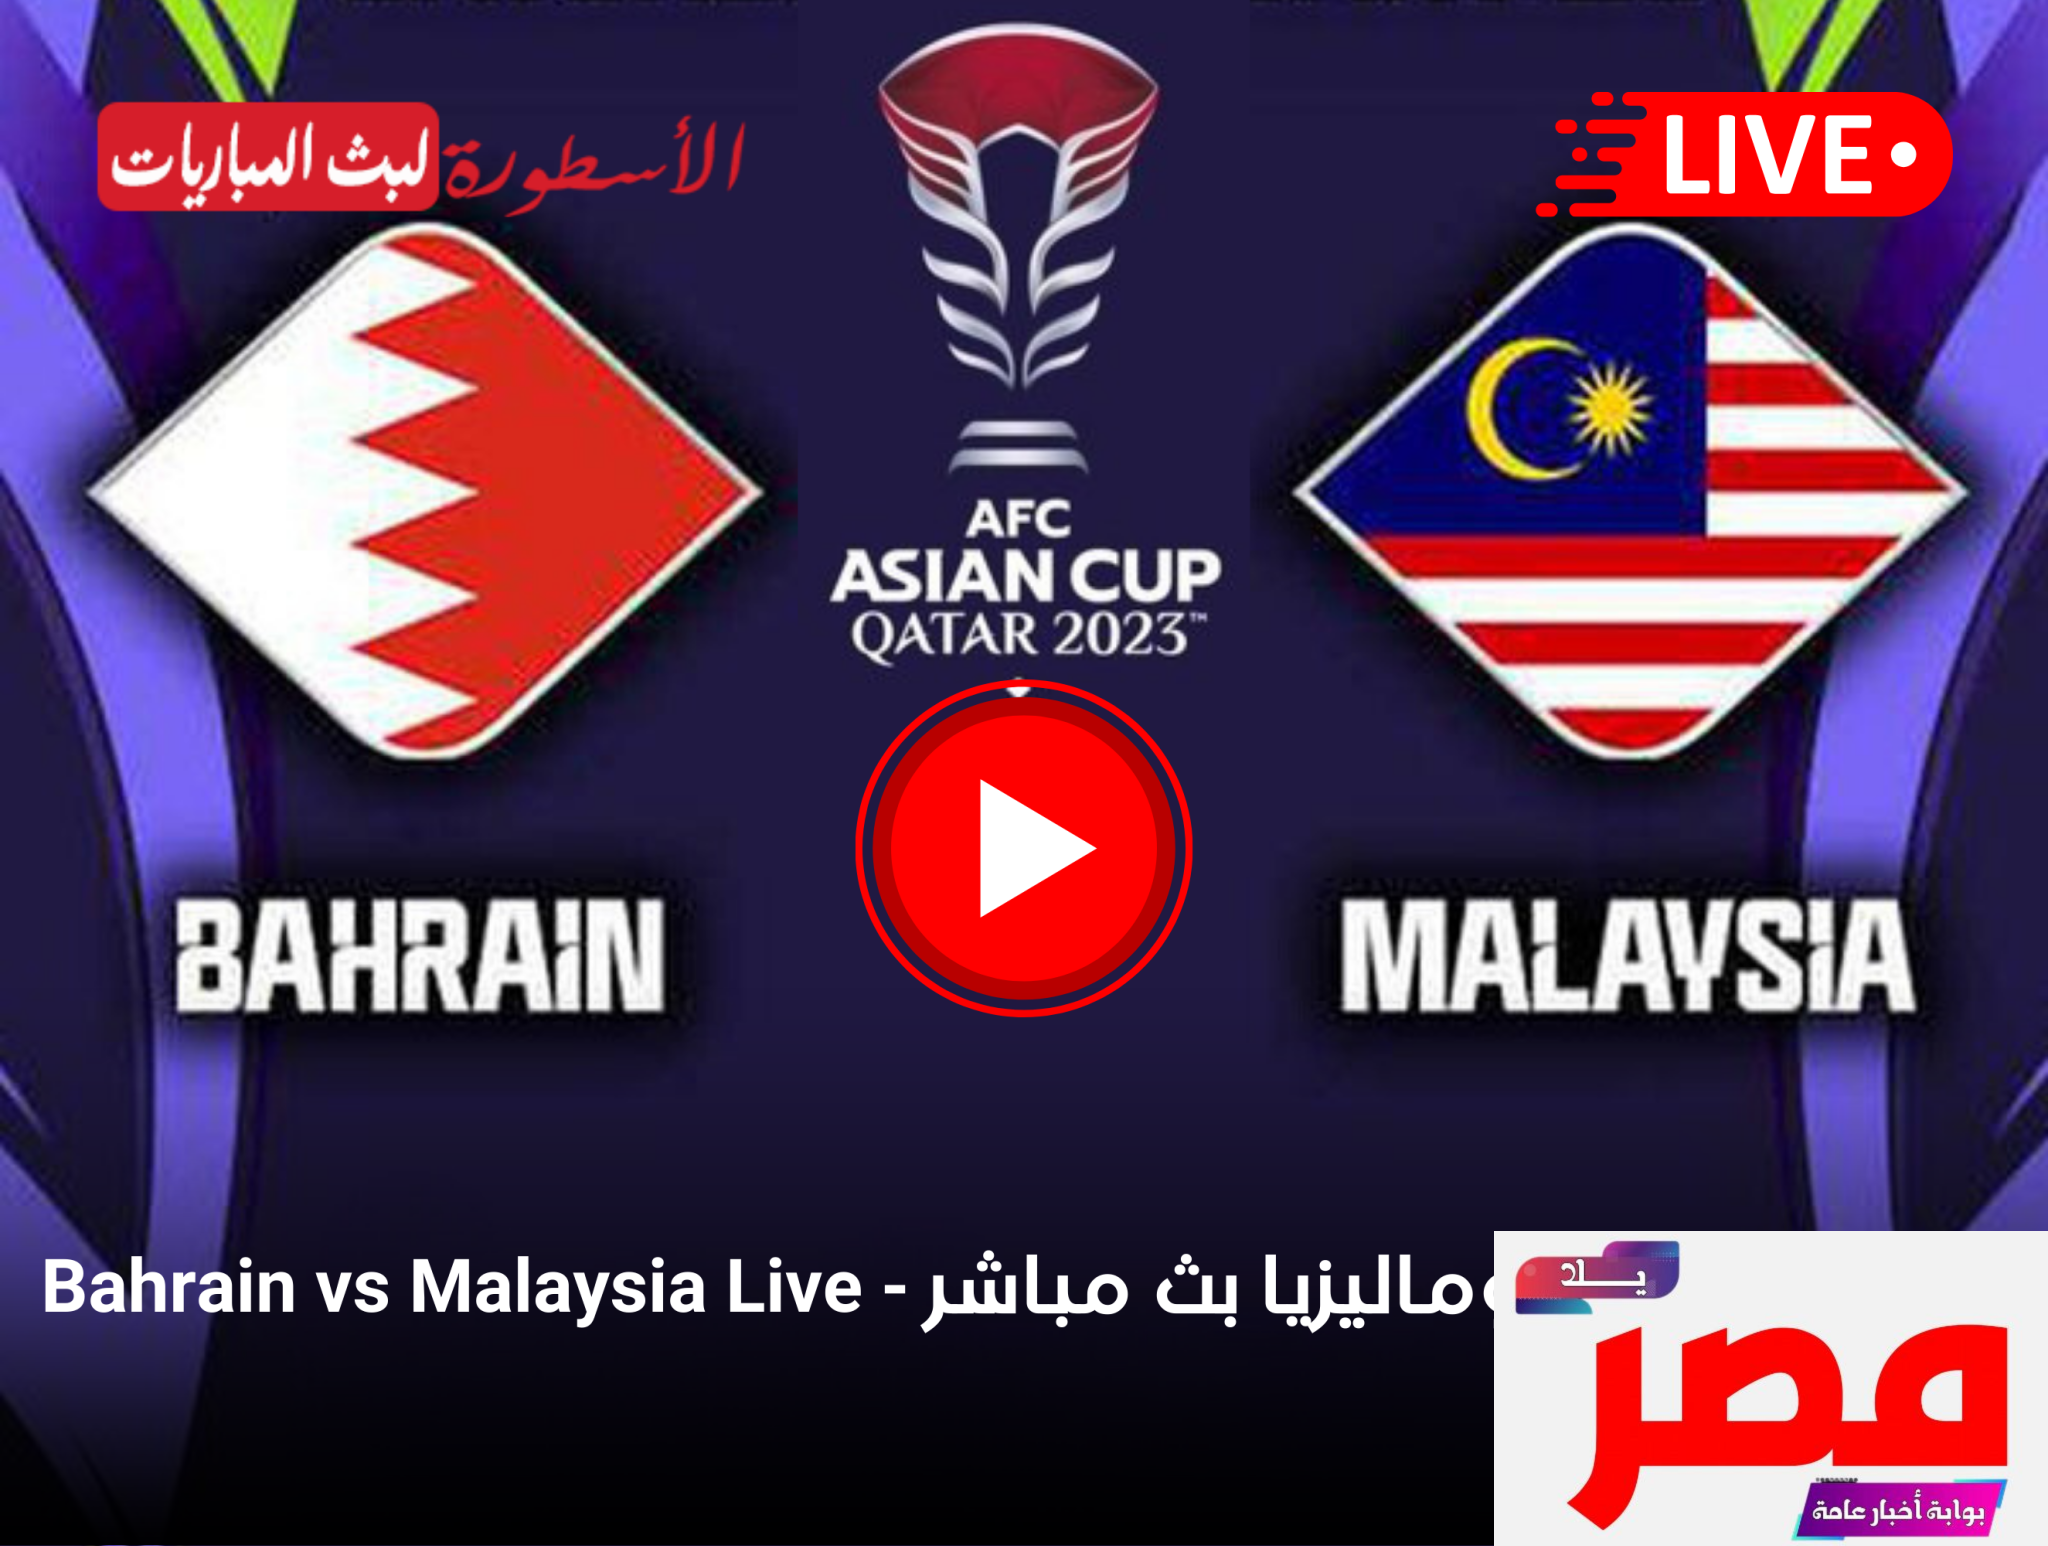 قناة مفتوحة تنقل مشاهدة مباراة البحرين وماليزيا